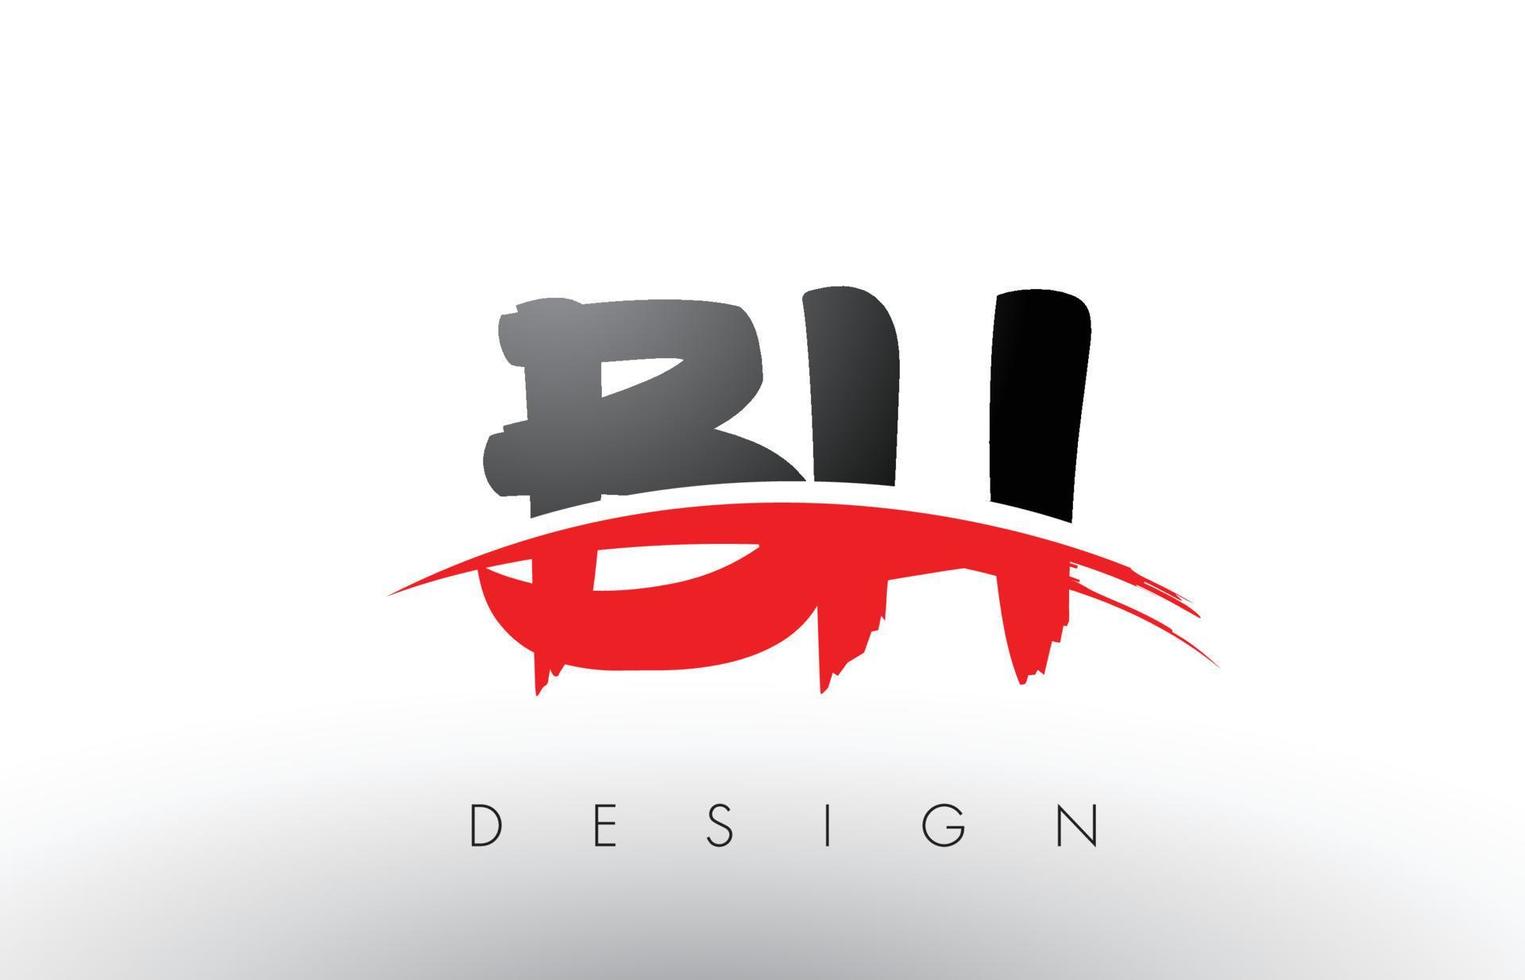 Letras do logotipo do pincel bh bh com pincel swoosh vermelho e preto na frente vetor